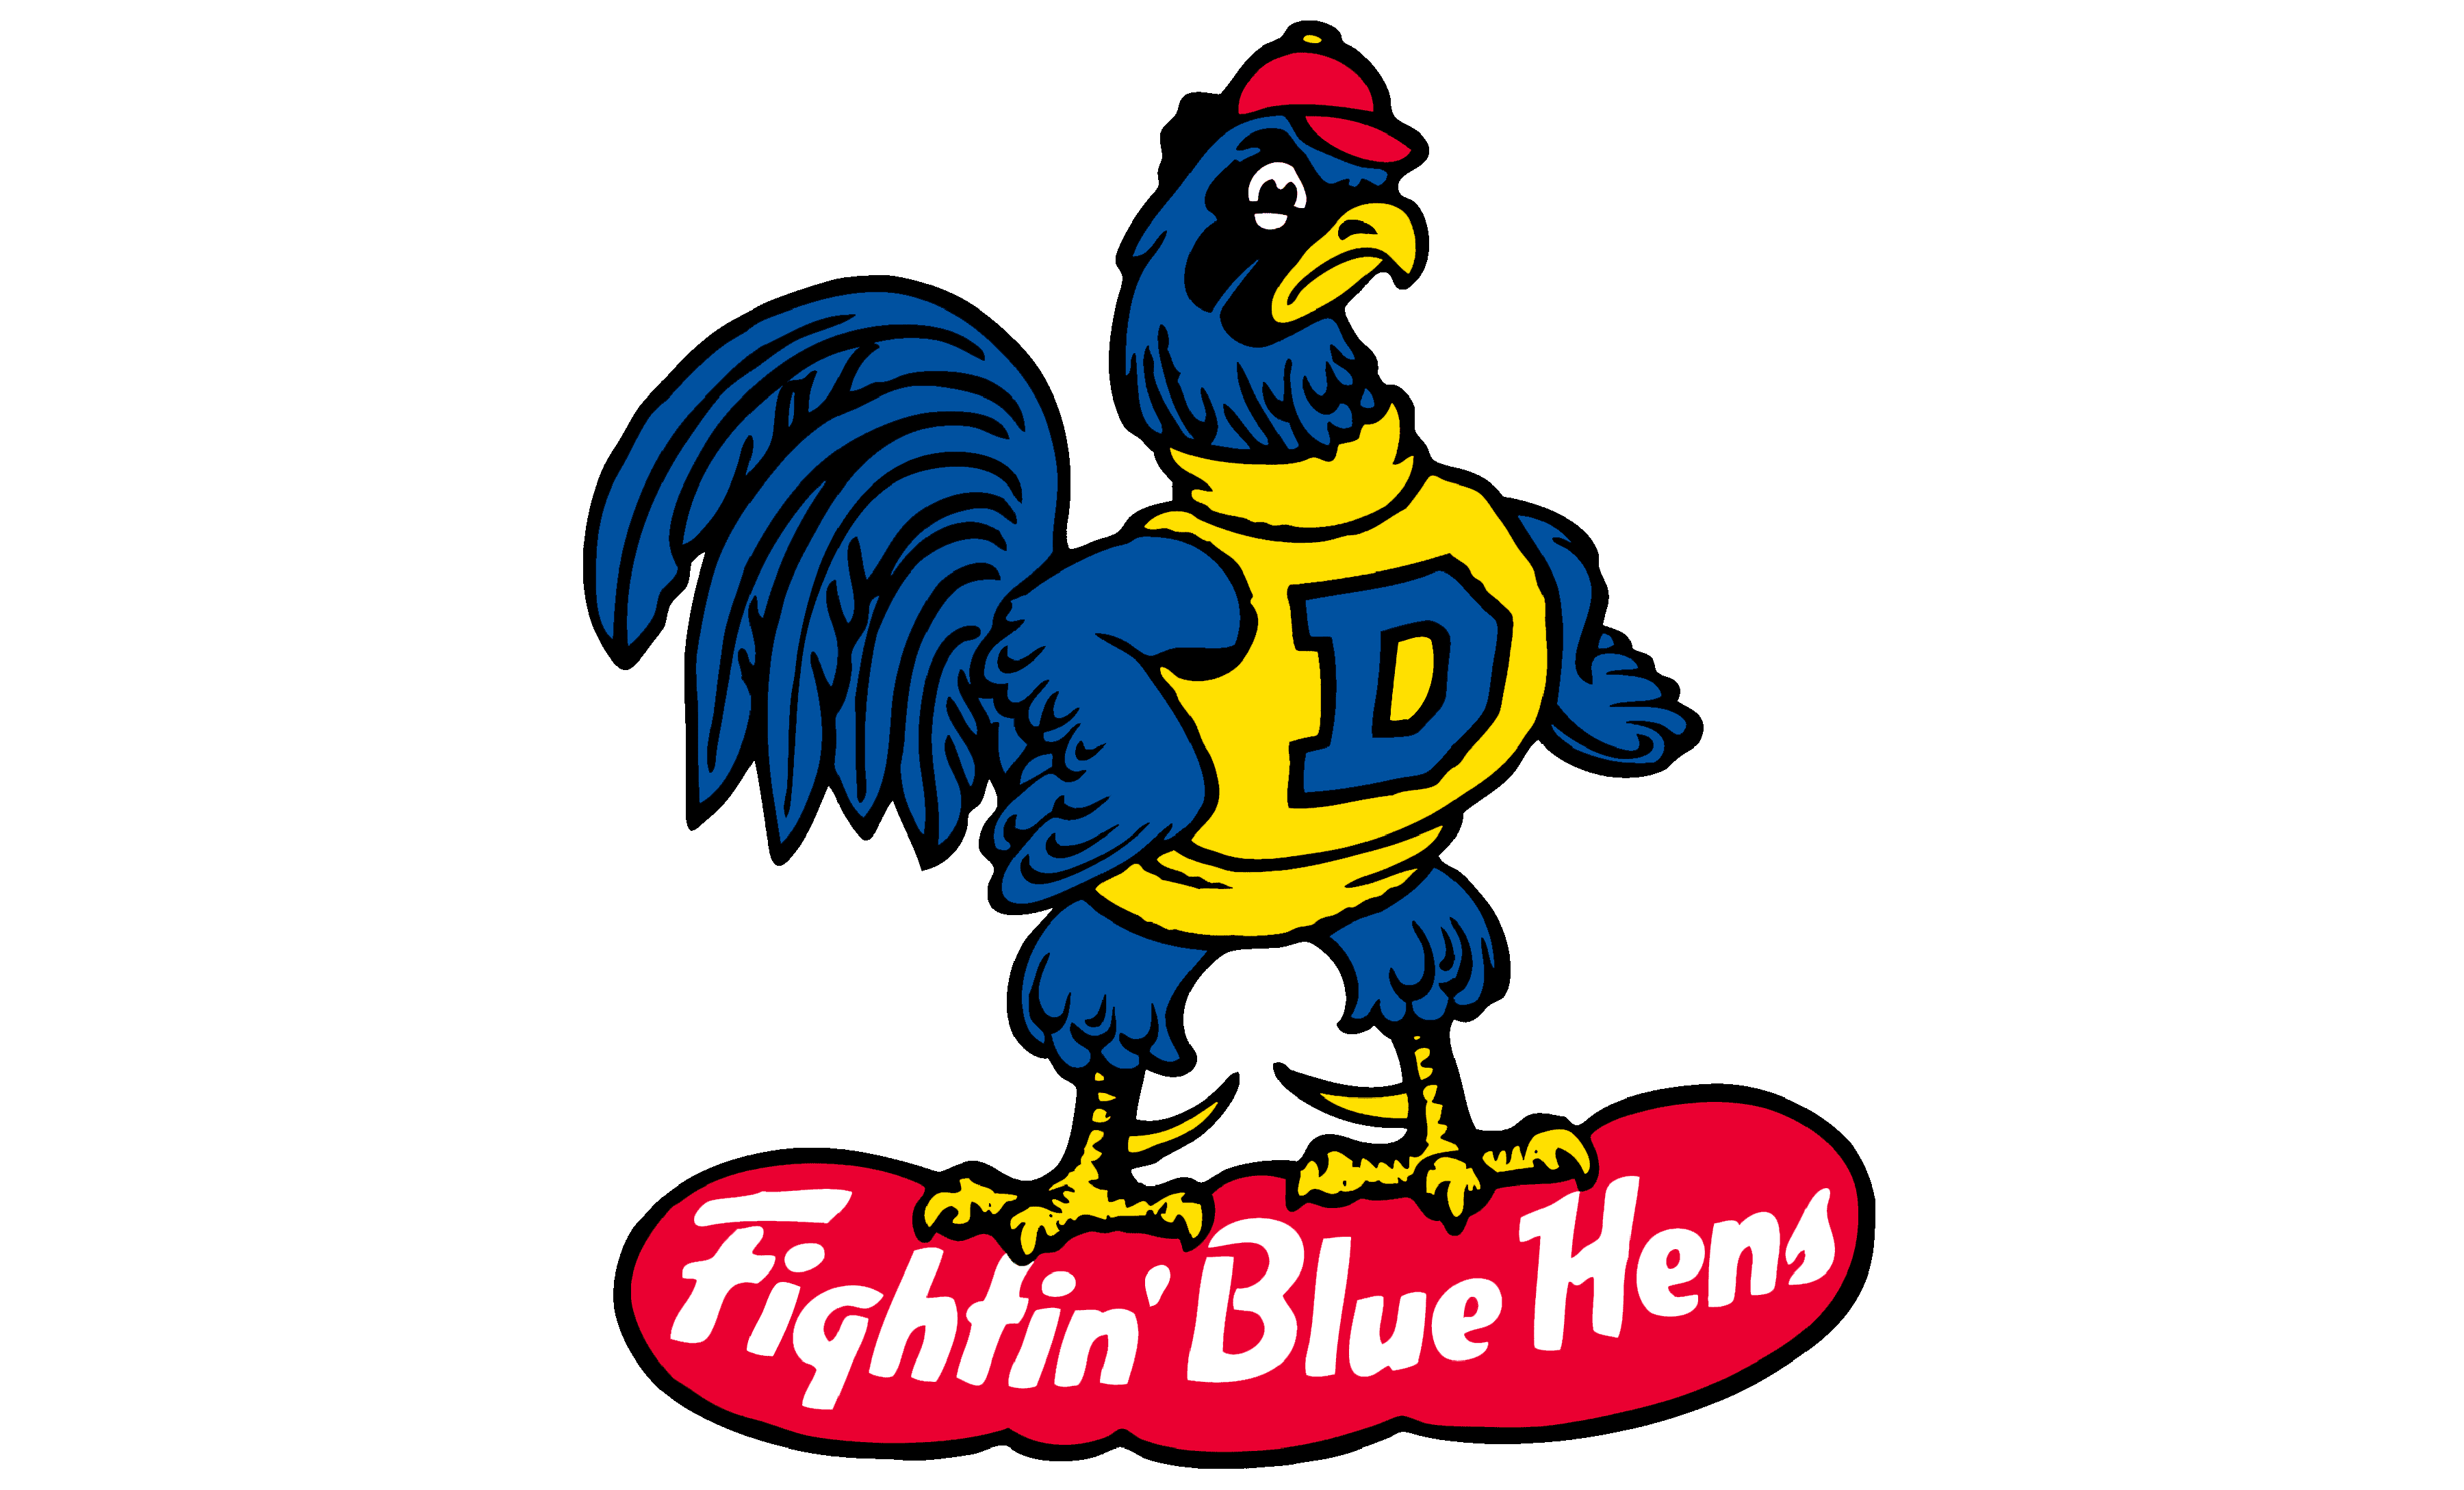 Delaware Blue Hen | vlr.eng.br